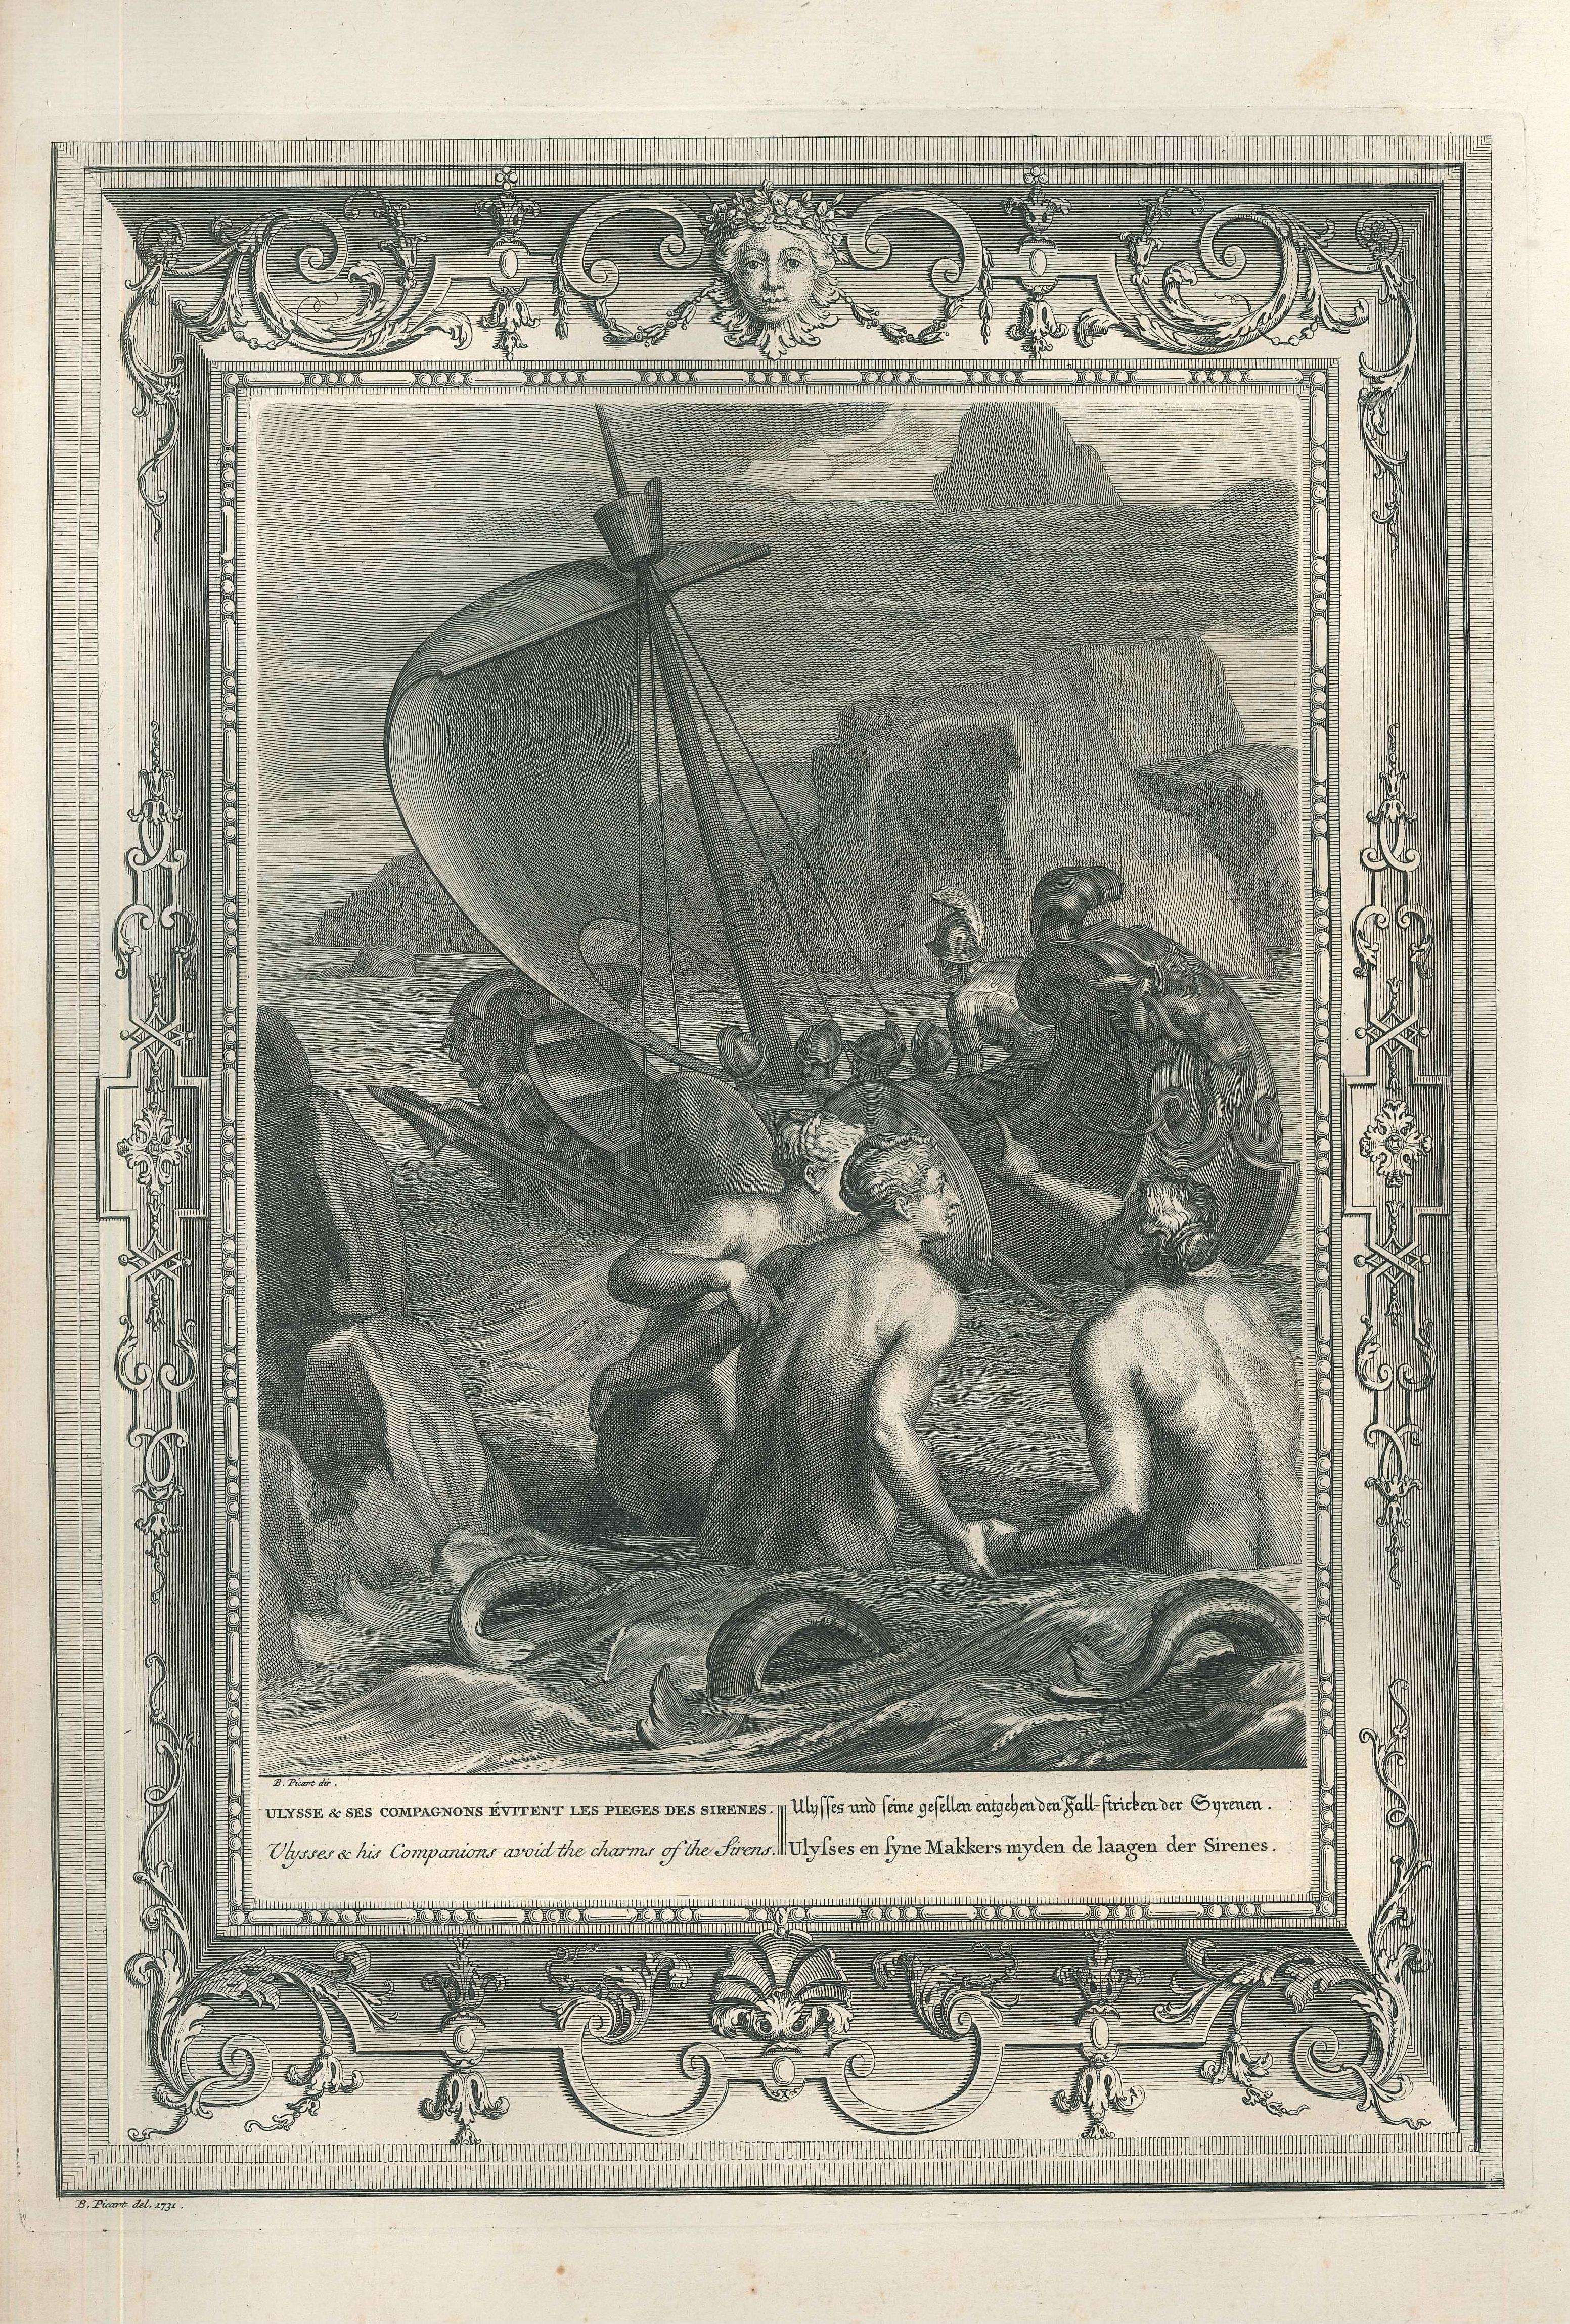 Bernard Picart Figurative Print - Ulysse et ses compagnons, from "Le Temple des Muses"